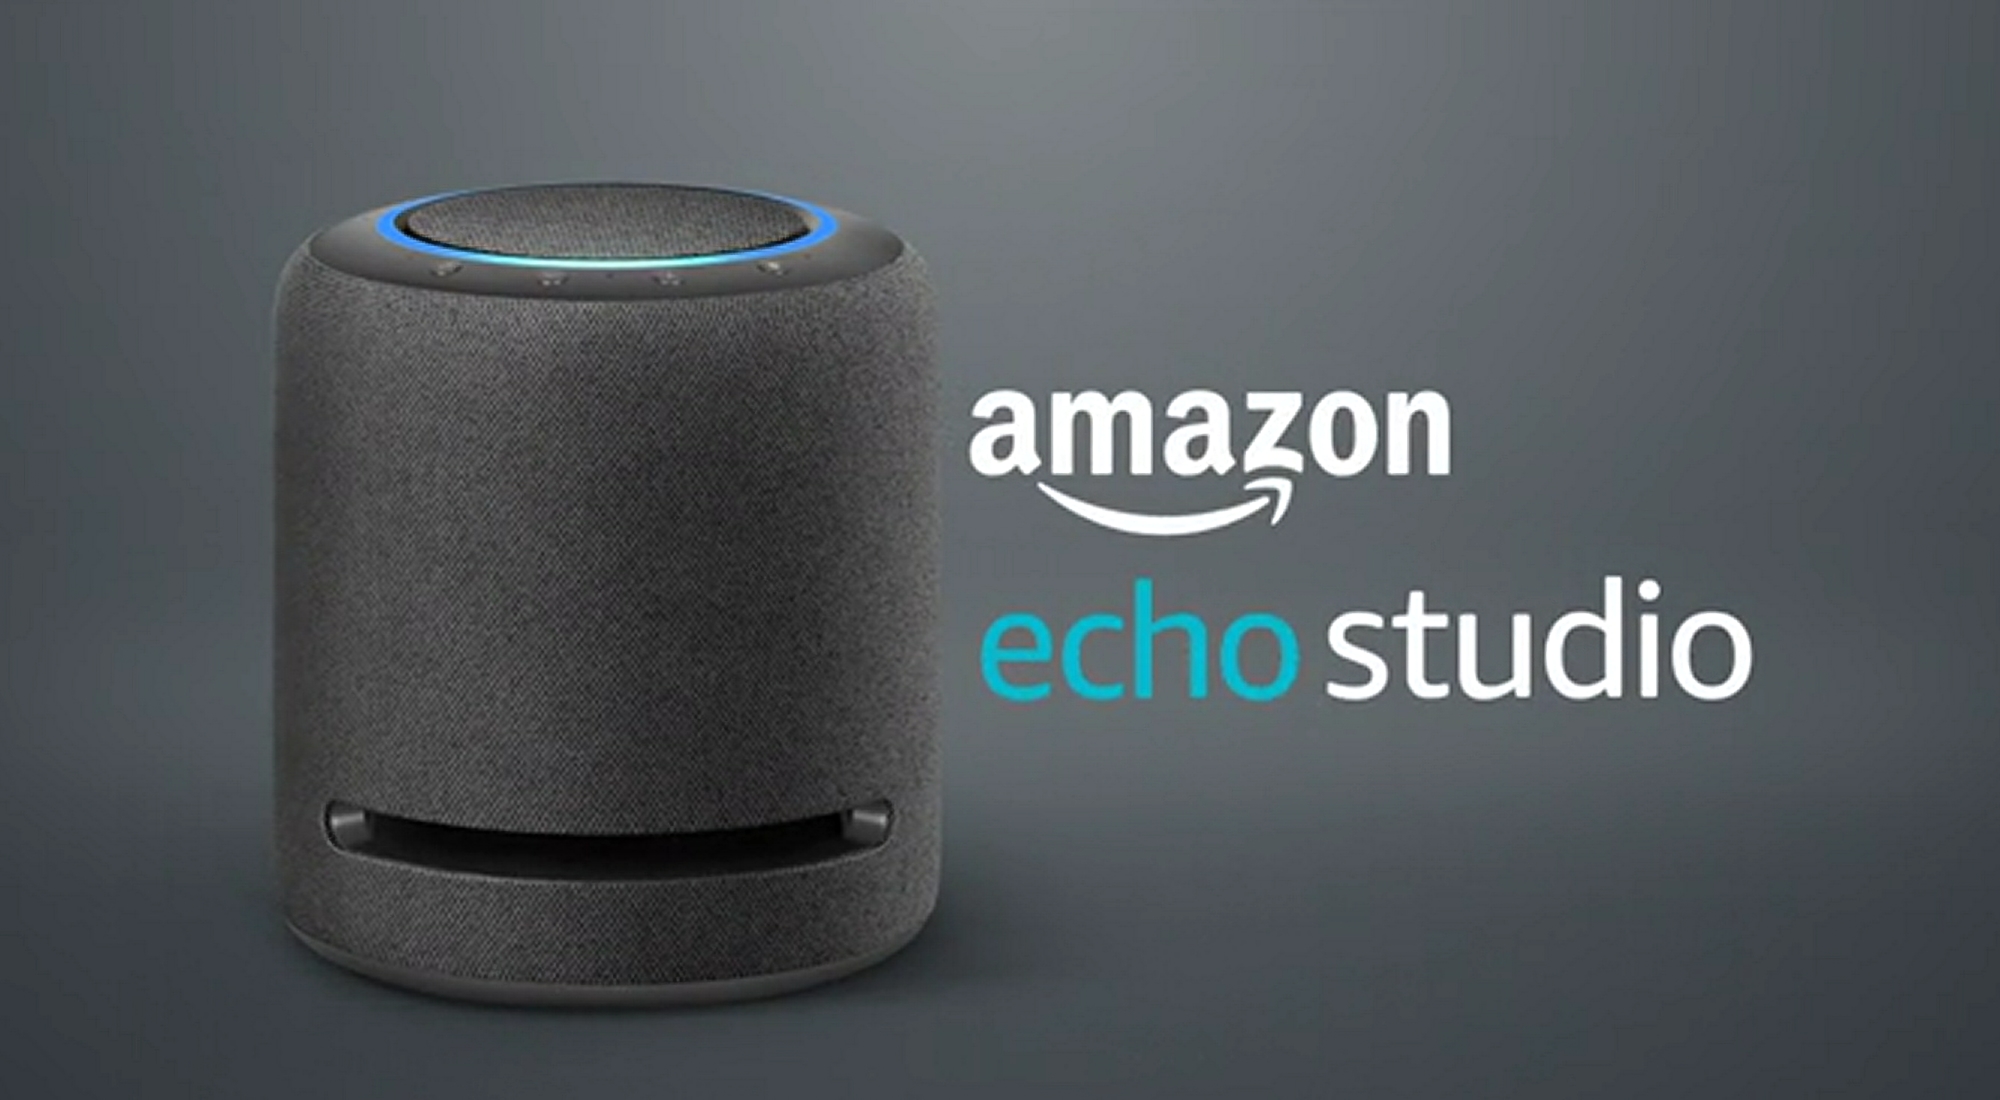 Zniżka wynosi 60 euro: Amazon Echo Studio z dźwiękiem przestrzennym Spatial Audio w sprzedaży za 179 euro